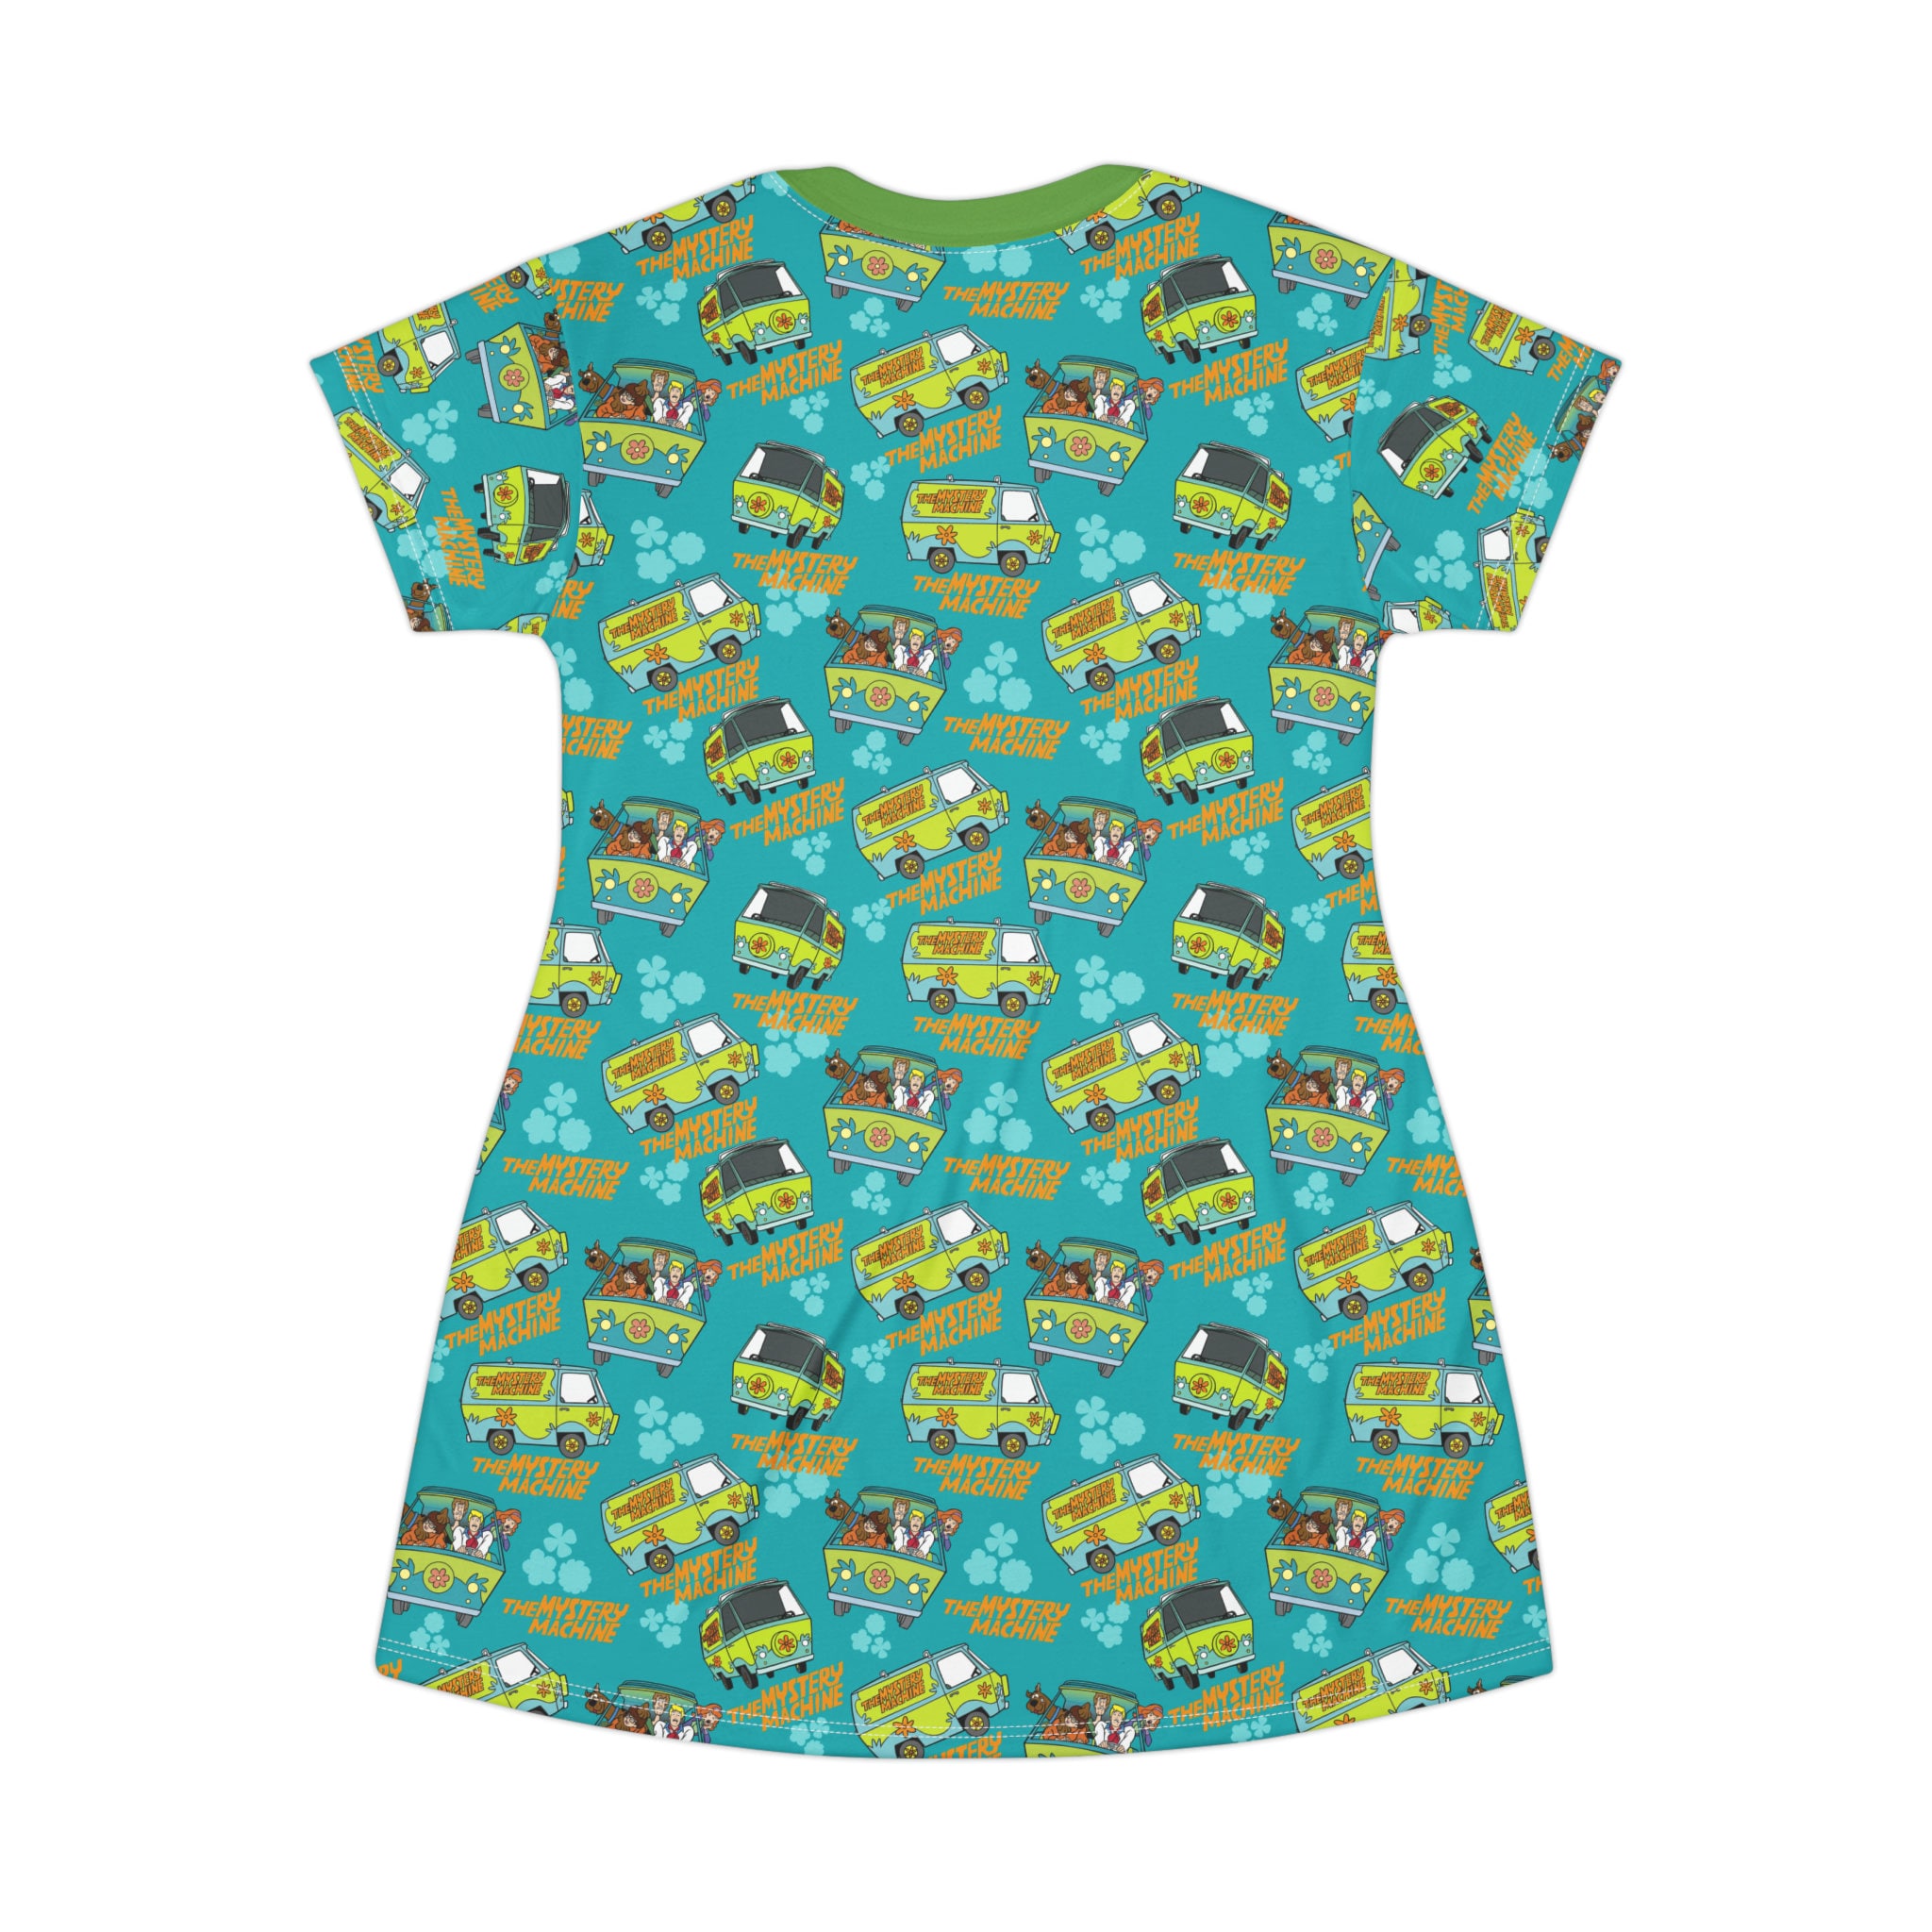 Scooby Doo T-Shirt Dress, Cartoon Women's T-Shirt Dress